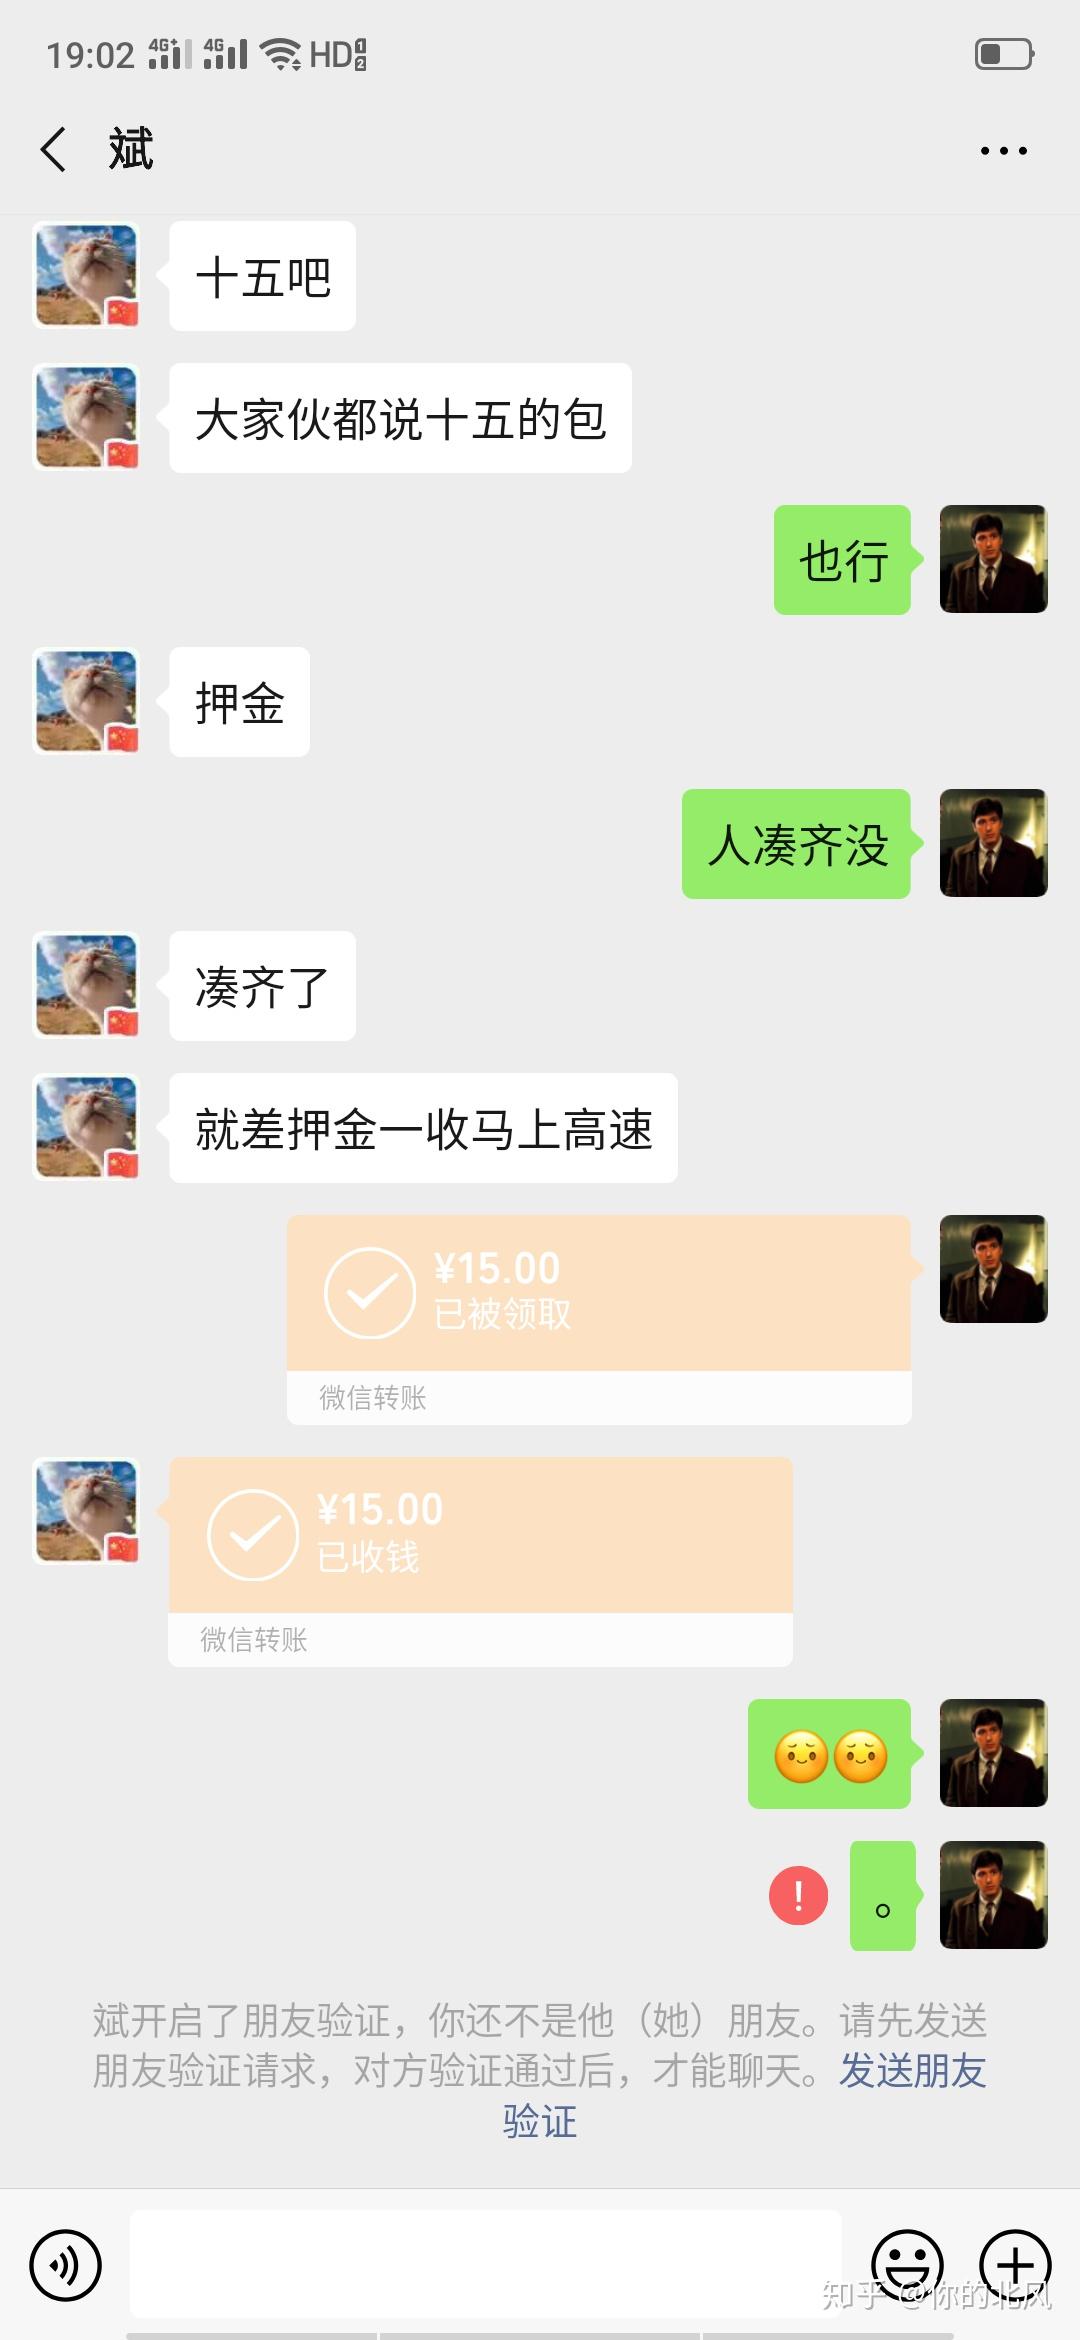 关于腾讯QQ成语接龙红包目前已经知晓的情报 - 哔哩哔哩